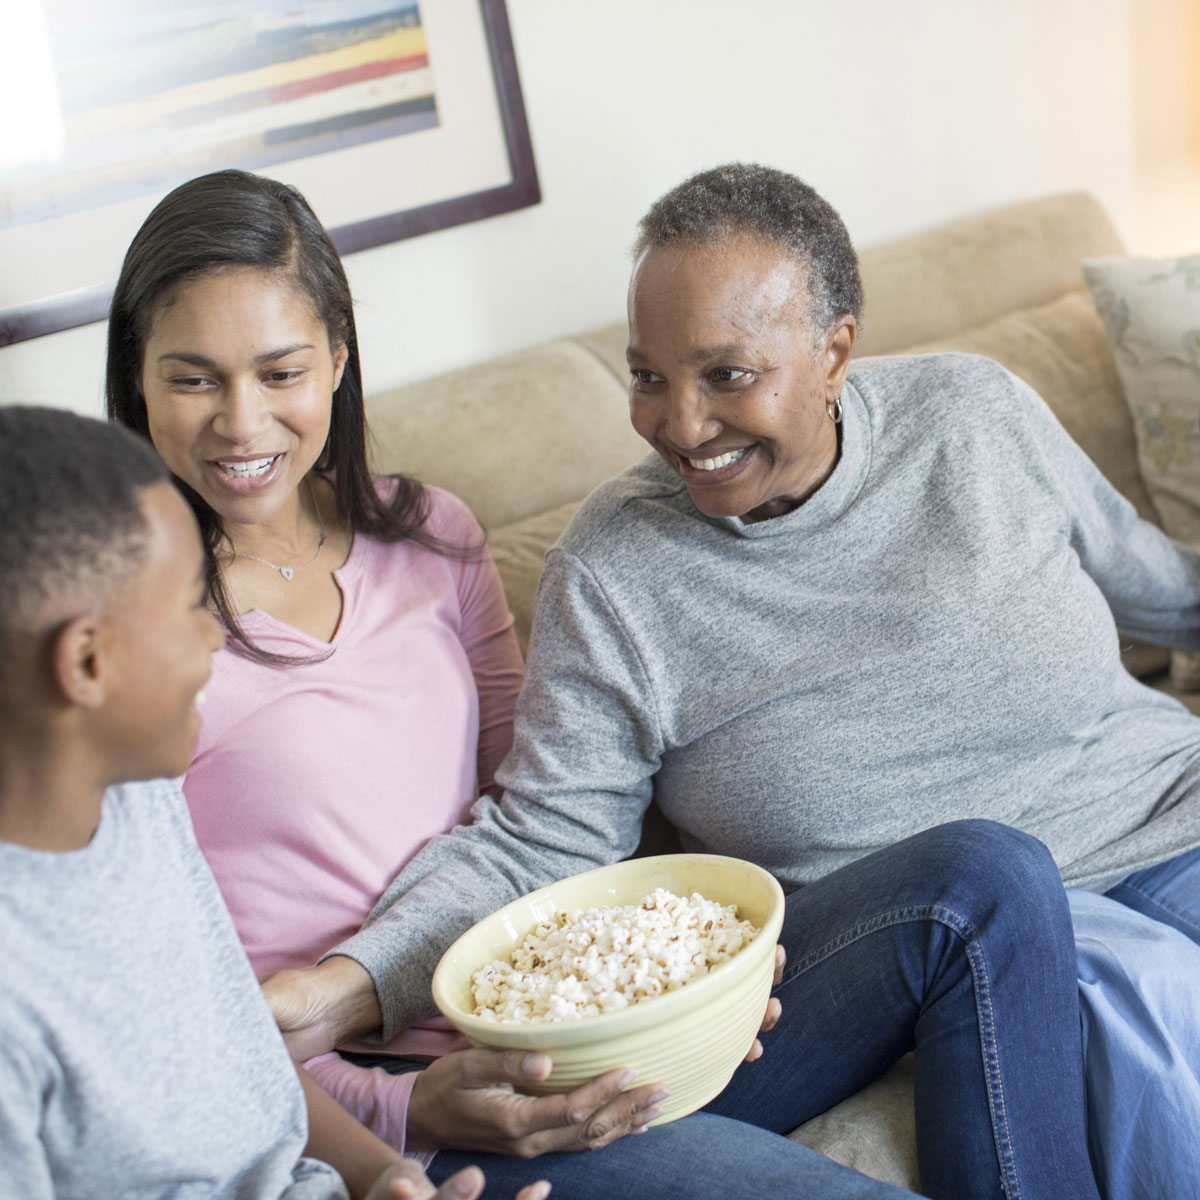 Una abuela, hija y dos nietos riendo y disfrutando un momento juntos, sentados en el sofá con un recipiente con palomitas de maíz.